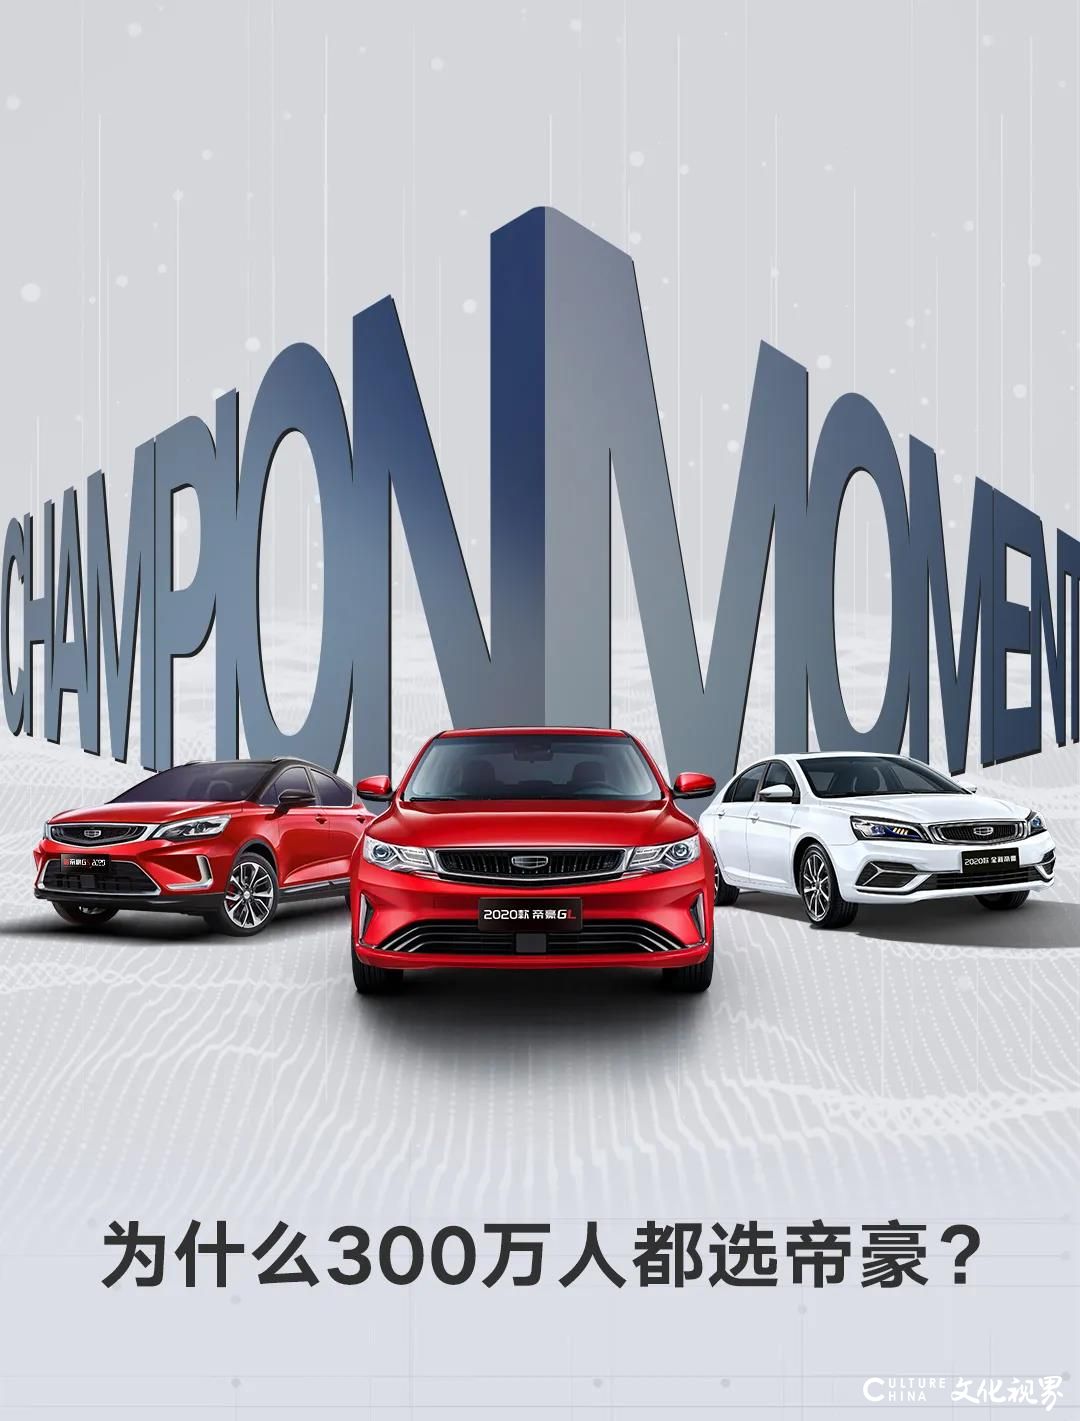 吉利帝豪300万辆冠军之路——“帝豪速度”创造中国品牌轿车新高度